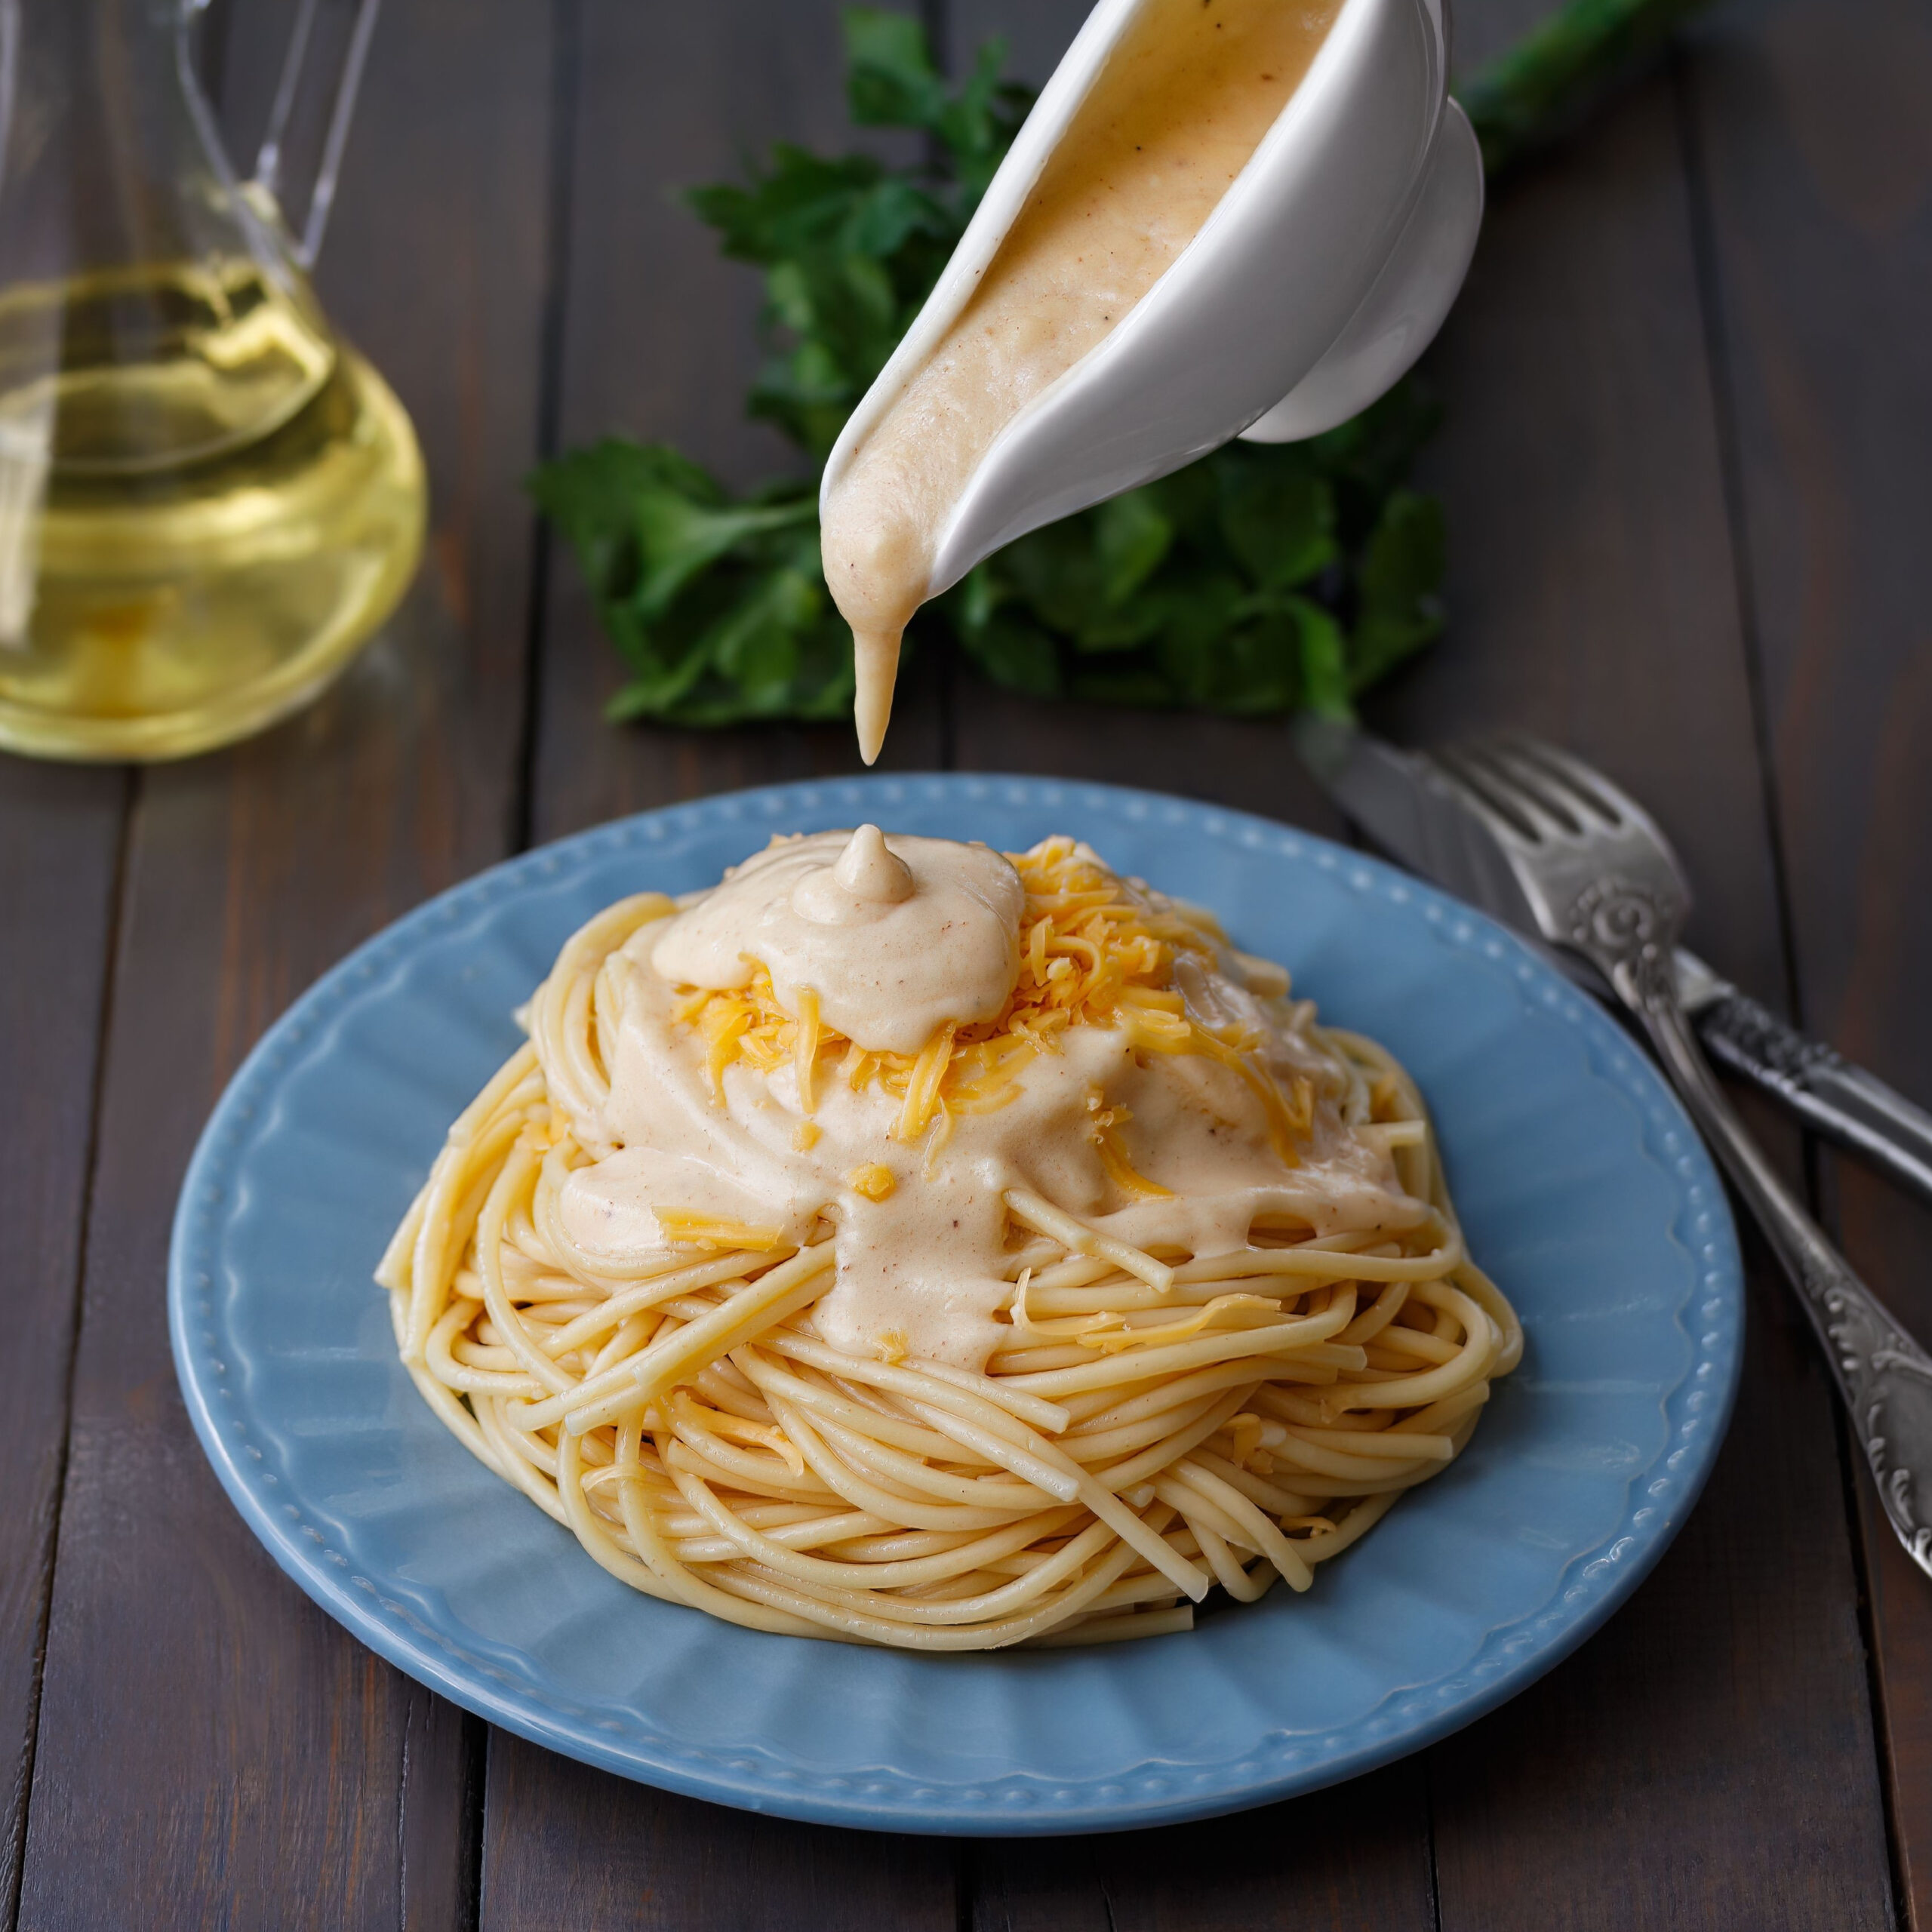 alfredo sauce pouring onto pasta